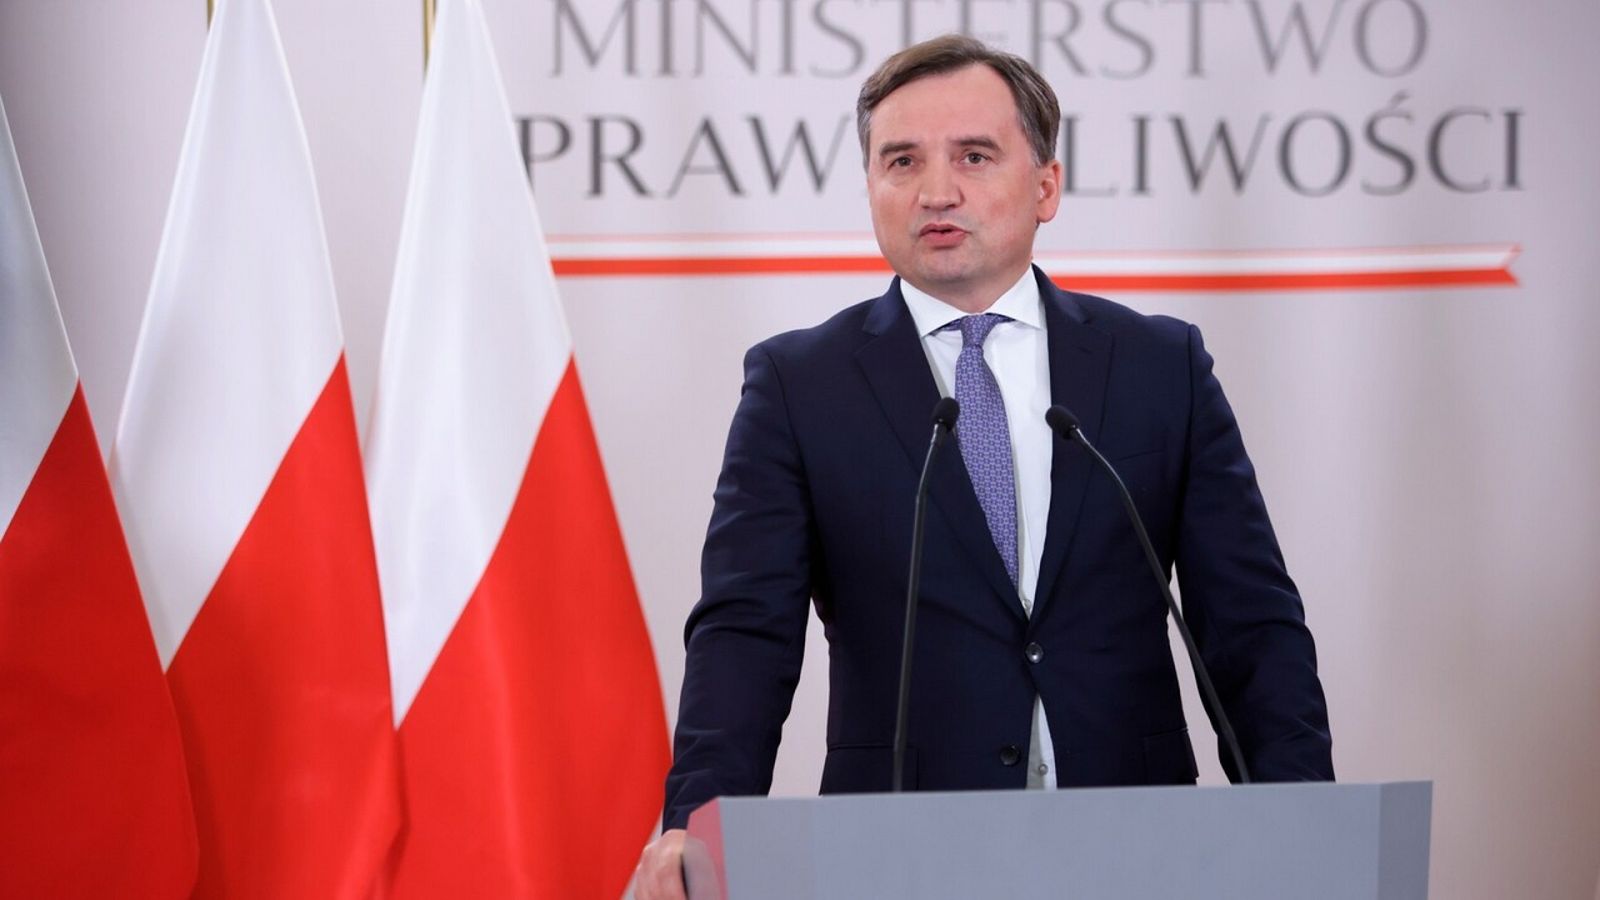 El ministro de Justicia de Polonia, Zbigniew Ziobro, critica la petición de la CE al TJUE de multar a su país por no garantizar la independencia judicial. EFE/EPA/Leszek Szymanski